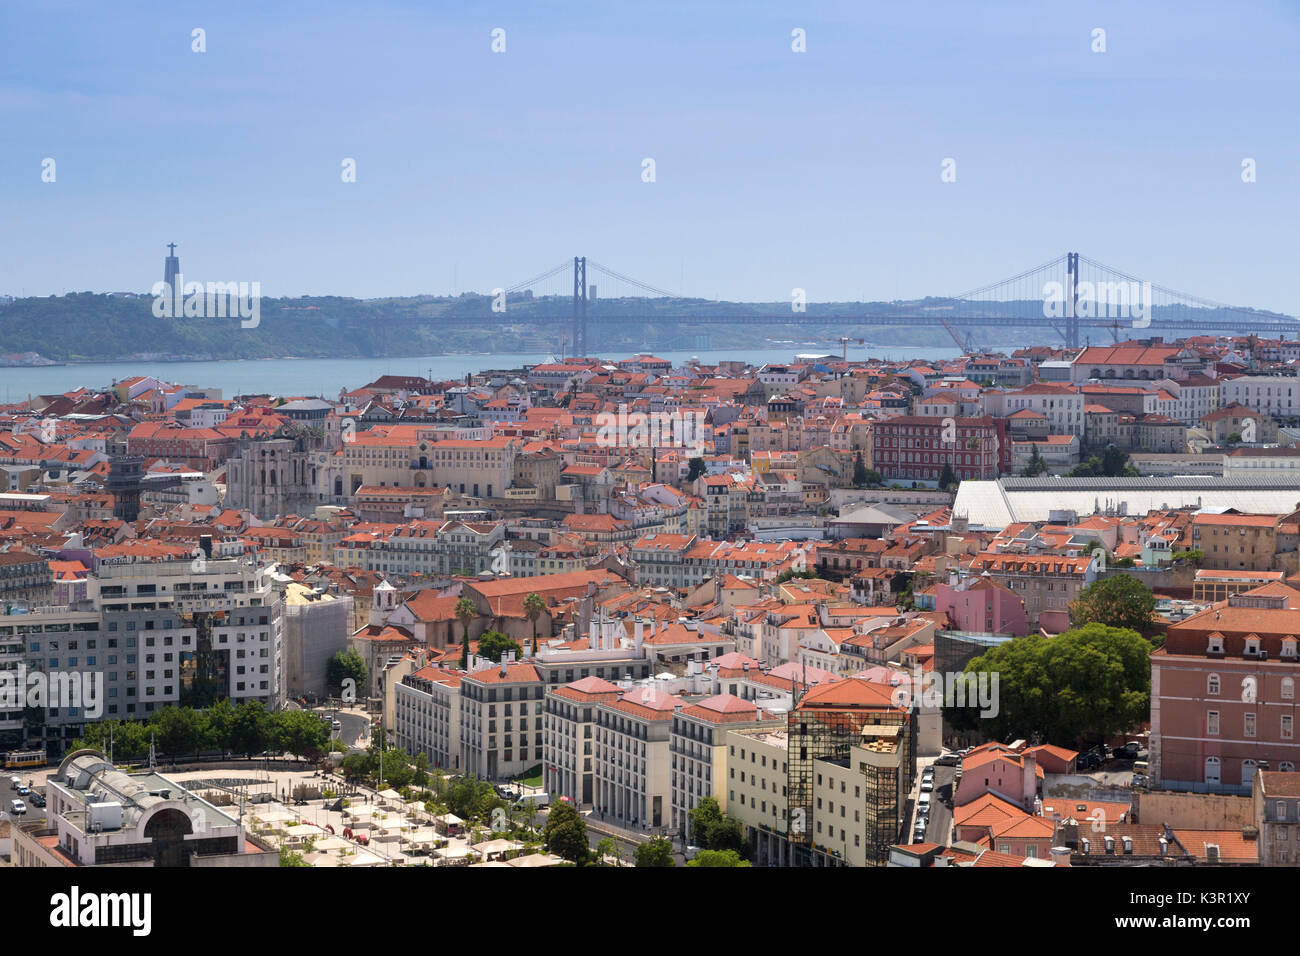 Vue sur la ville avec Ponte 25 de Abril en arrière-plan l'un des plus grands pont suspendu du monde Europe Portugal Lisbonne Banque D'Images